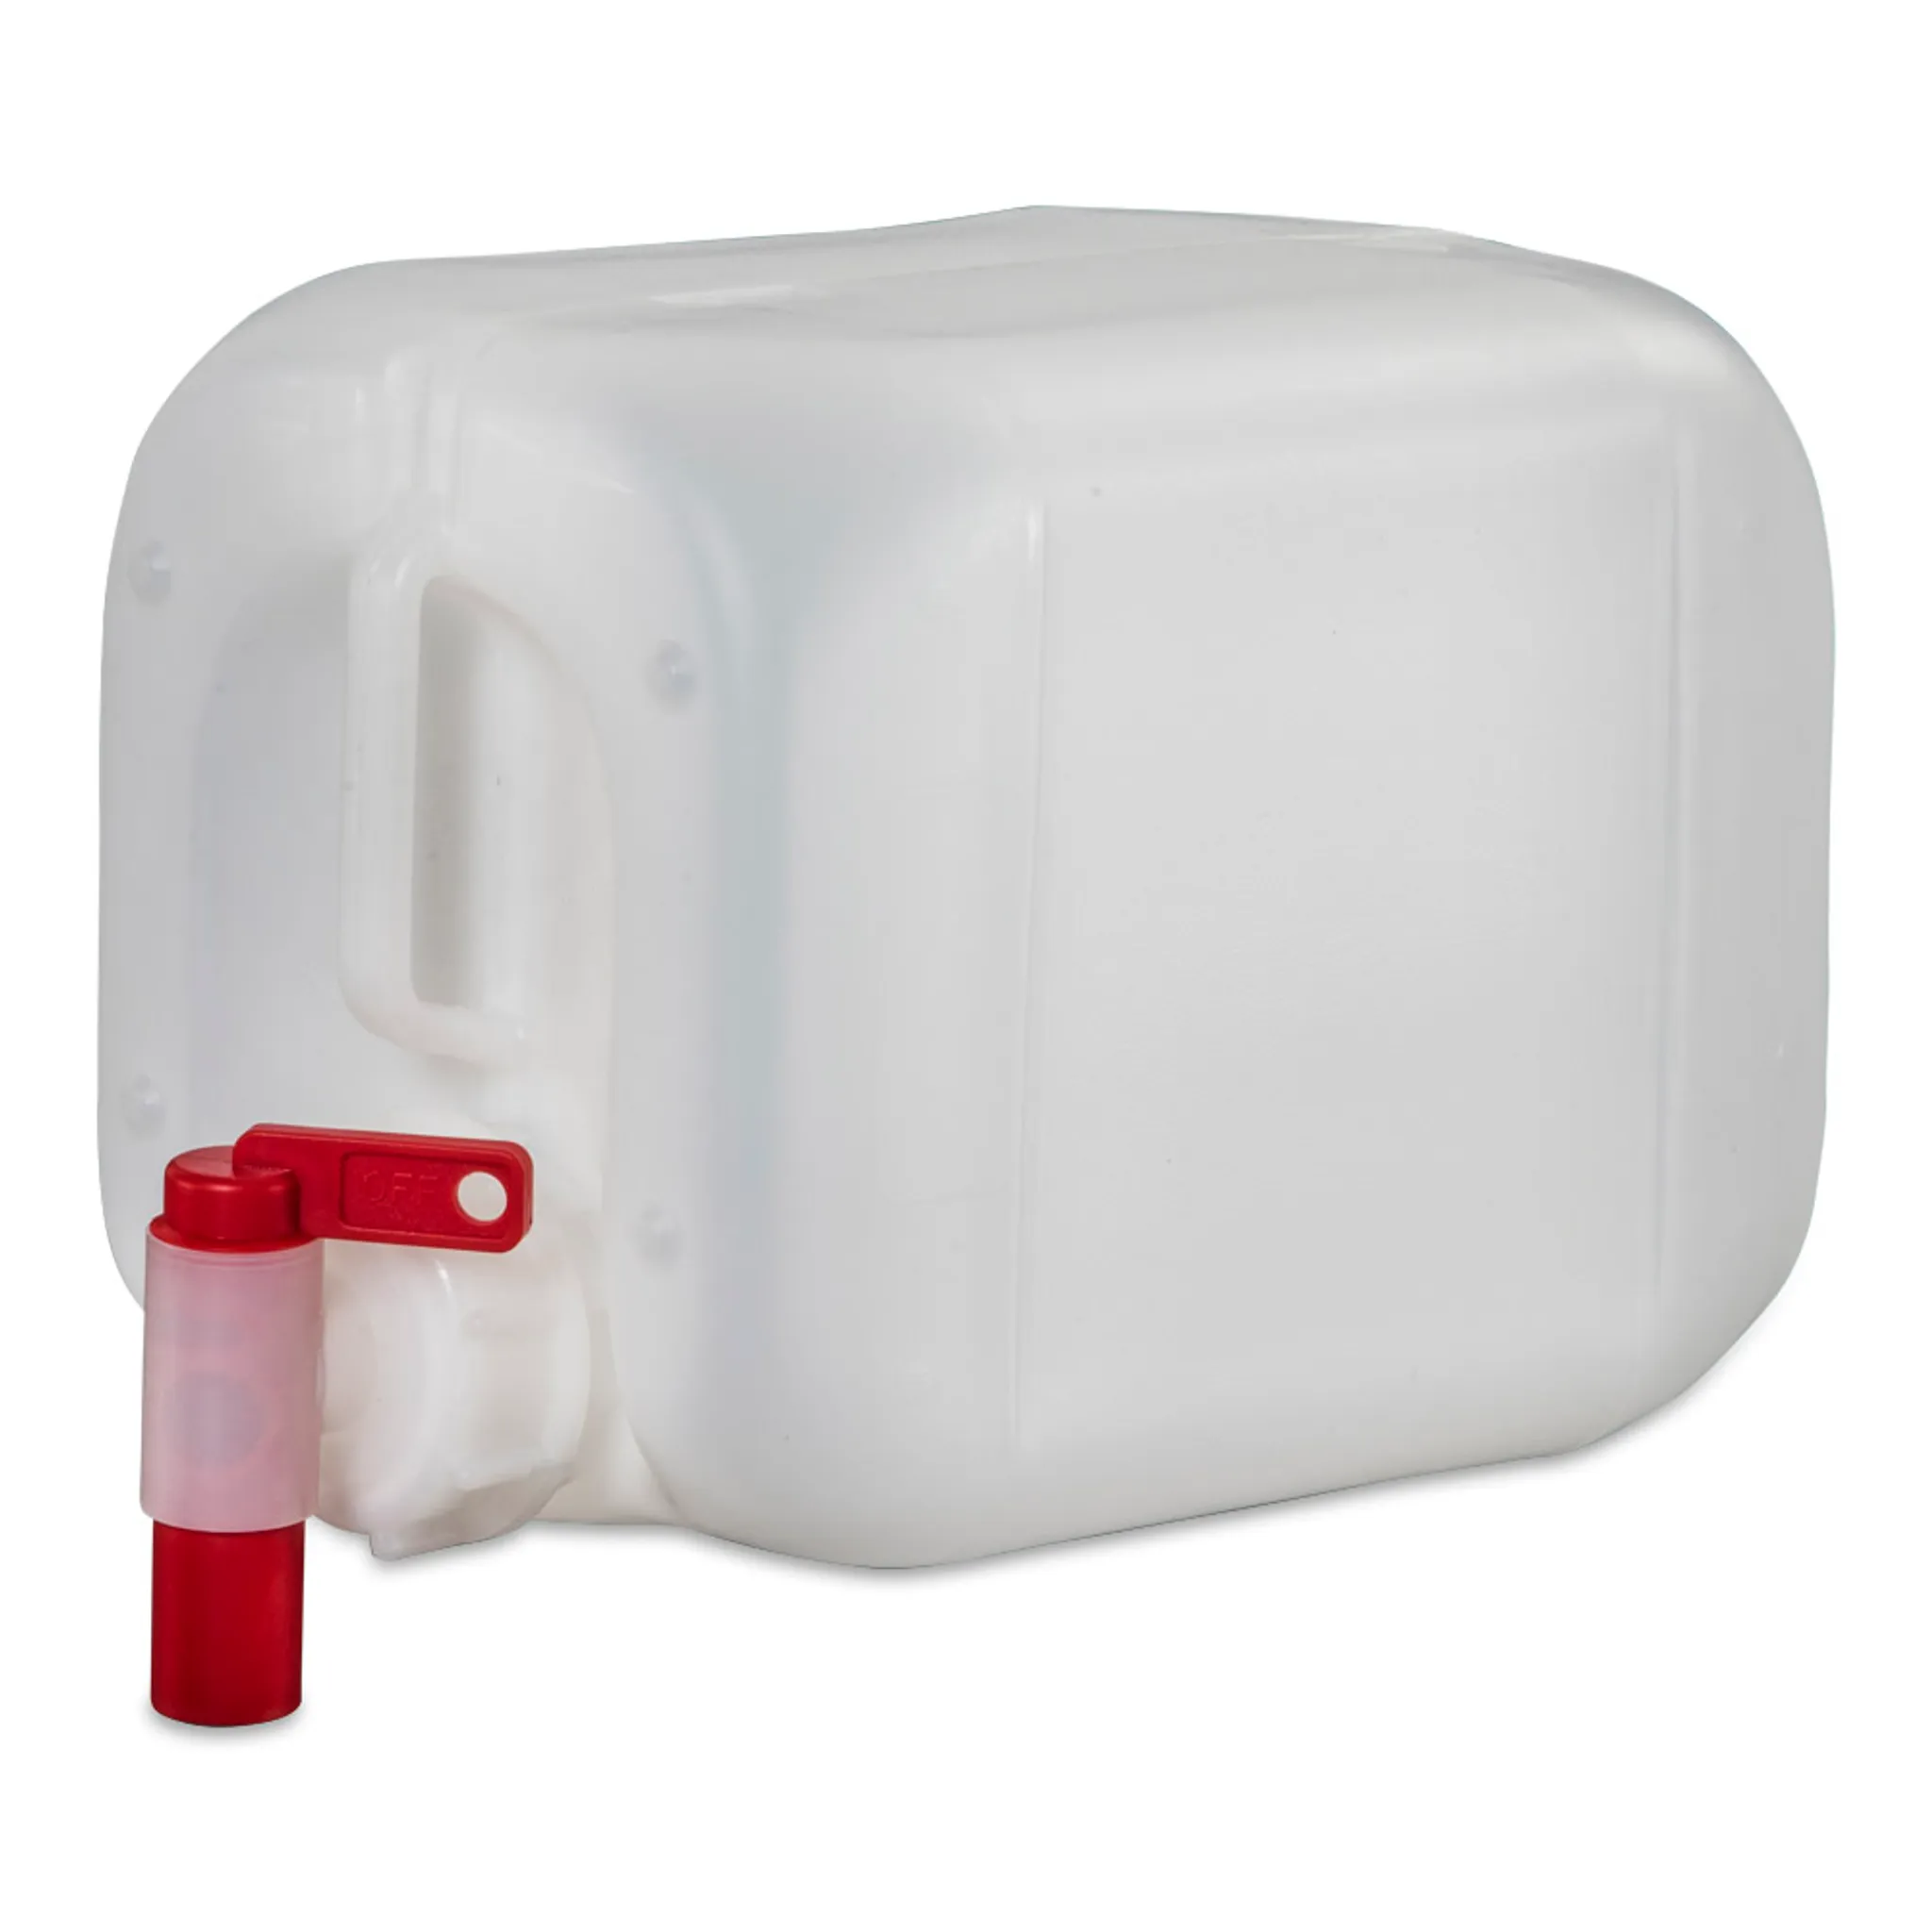 5 Liter Kanister Wasserkanister Campingkanister Farbe natur DIN51 + Hahn  (1x5knn51 + H.51)